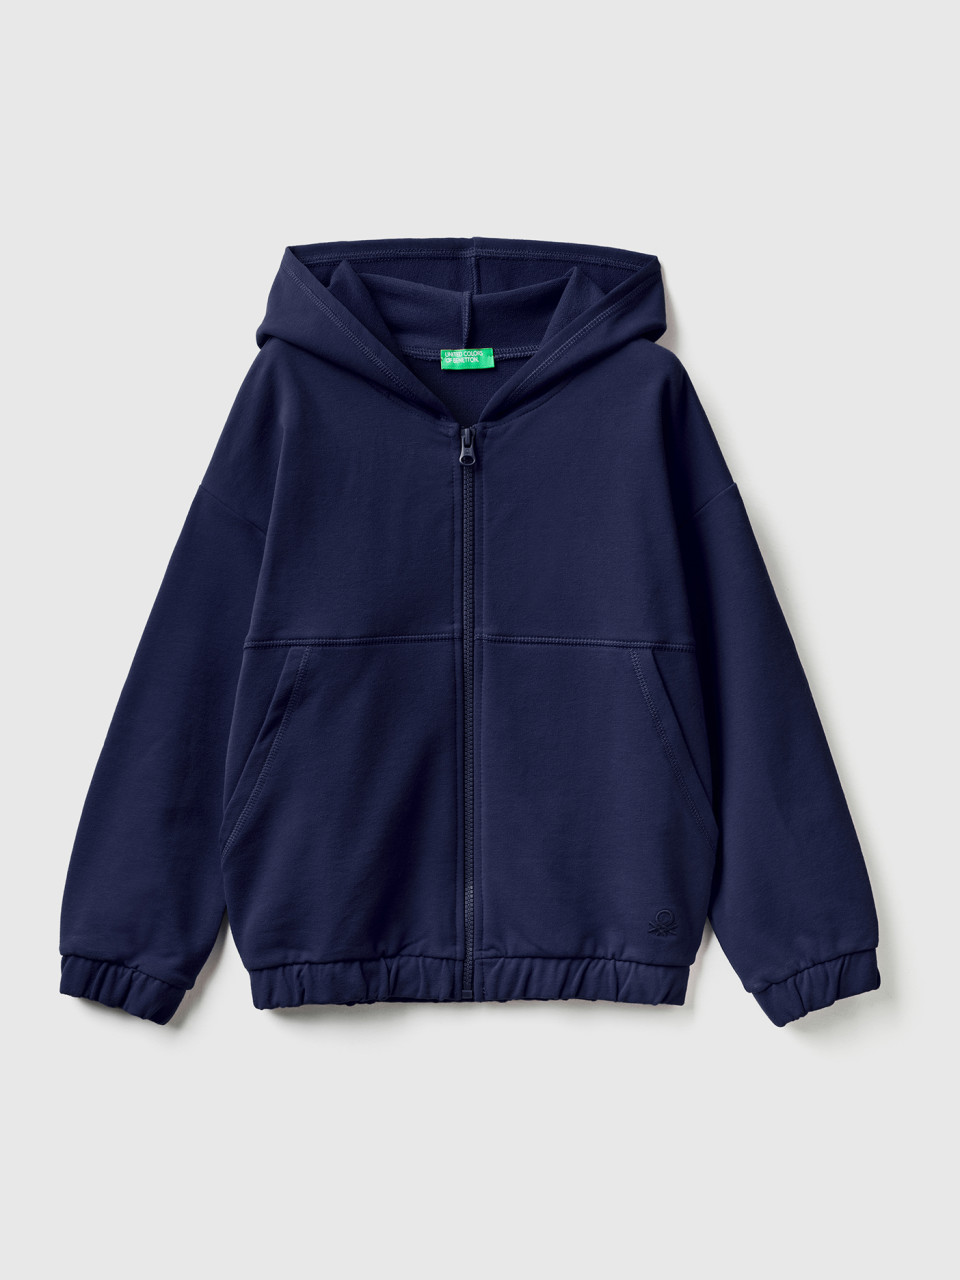 Benetton, Warmes Sweatshirt Mit Reißverschluss Und Aufgesticktem Logo, Dunkelblau, female